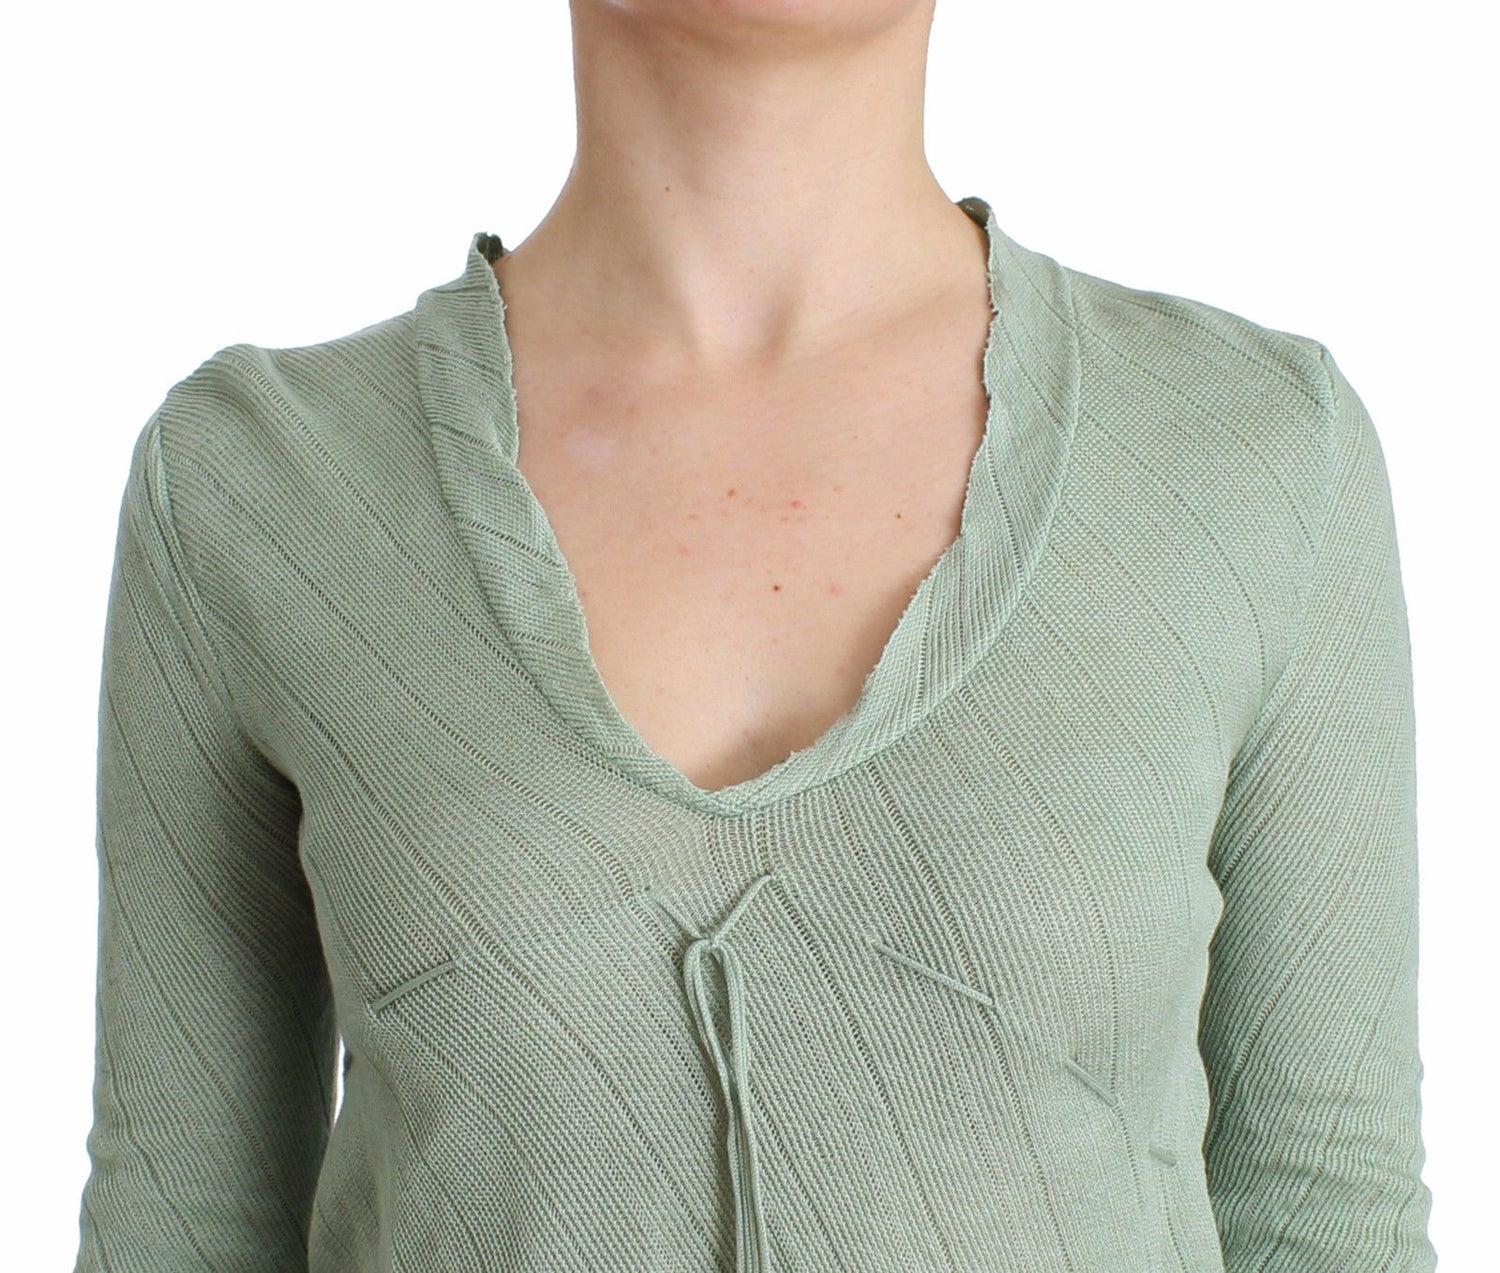 Green Lightweight Knit Sweater Top Blouse